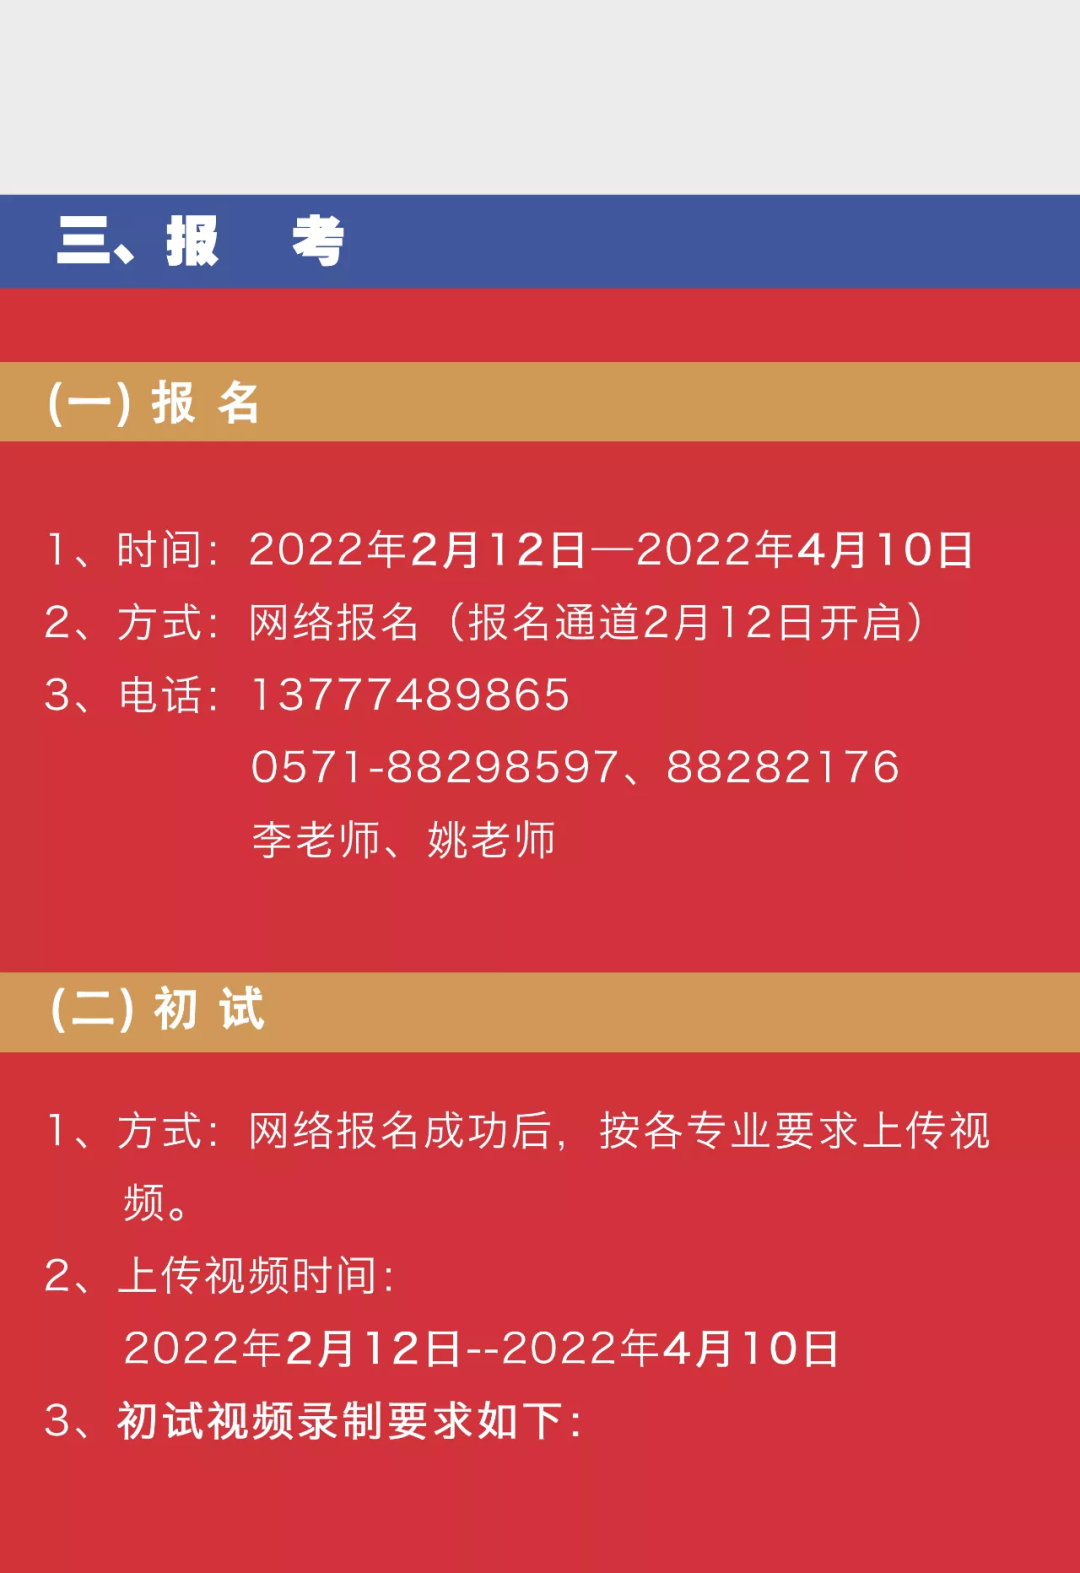 2022年杭州藝術學校招生簡章、招生對象、報考時間、考試內容及注意事項